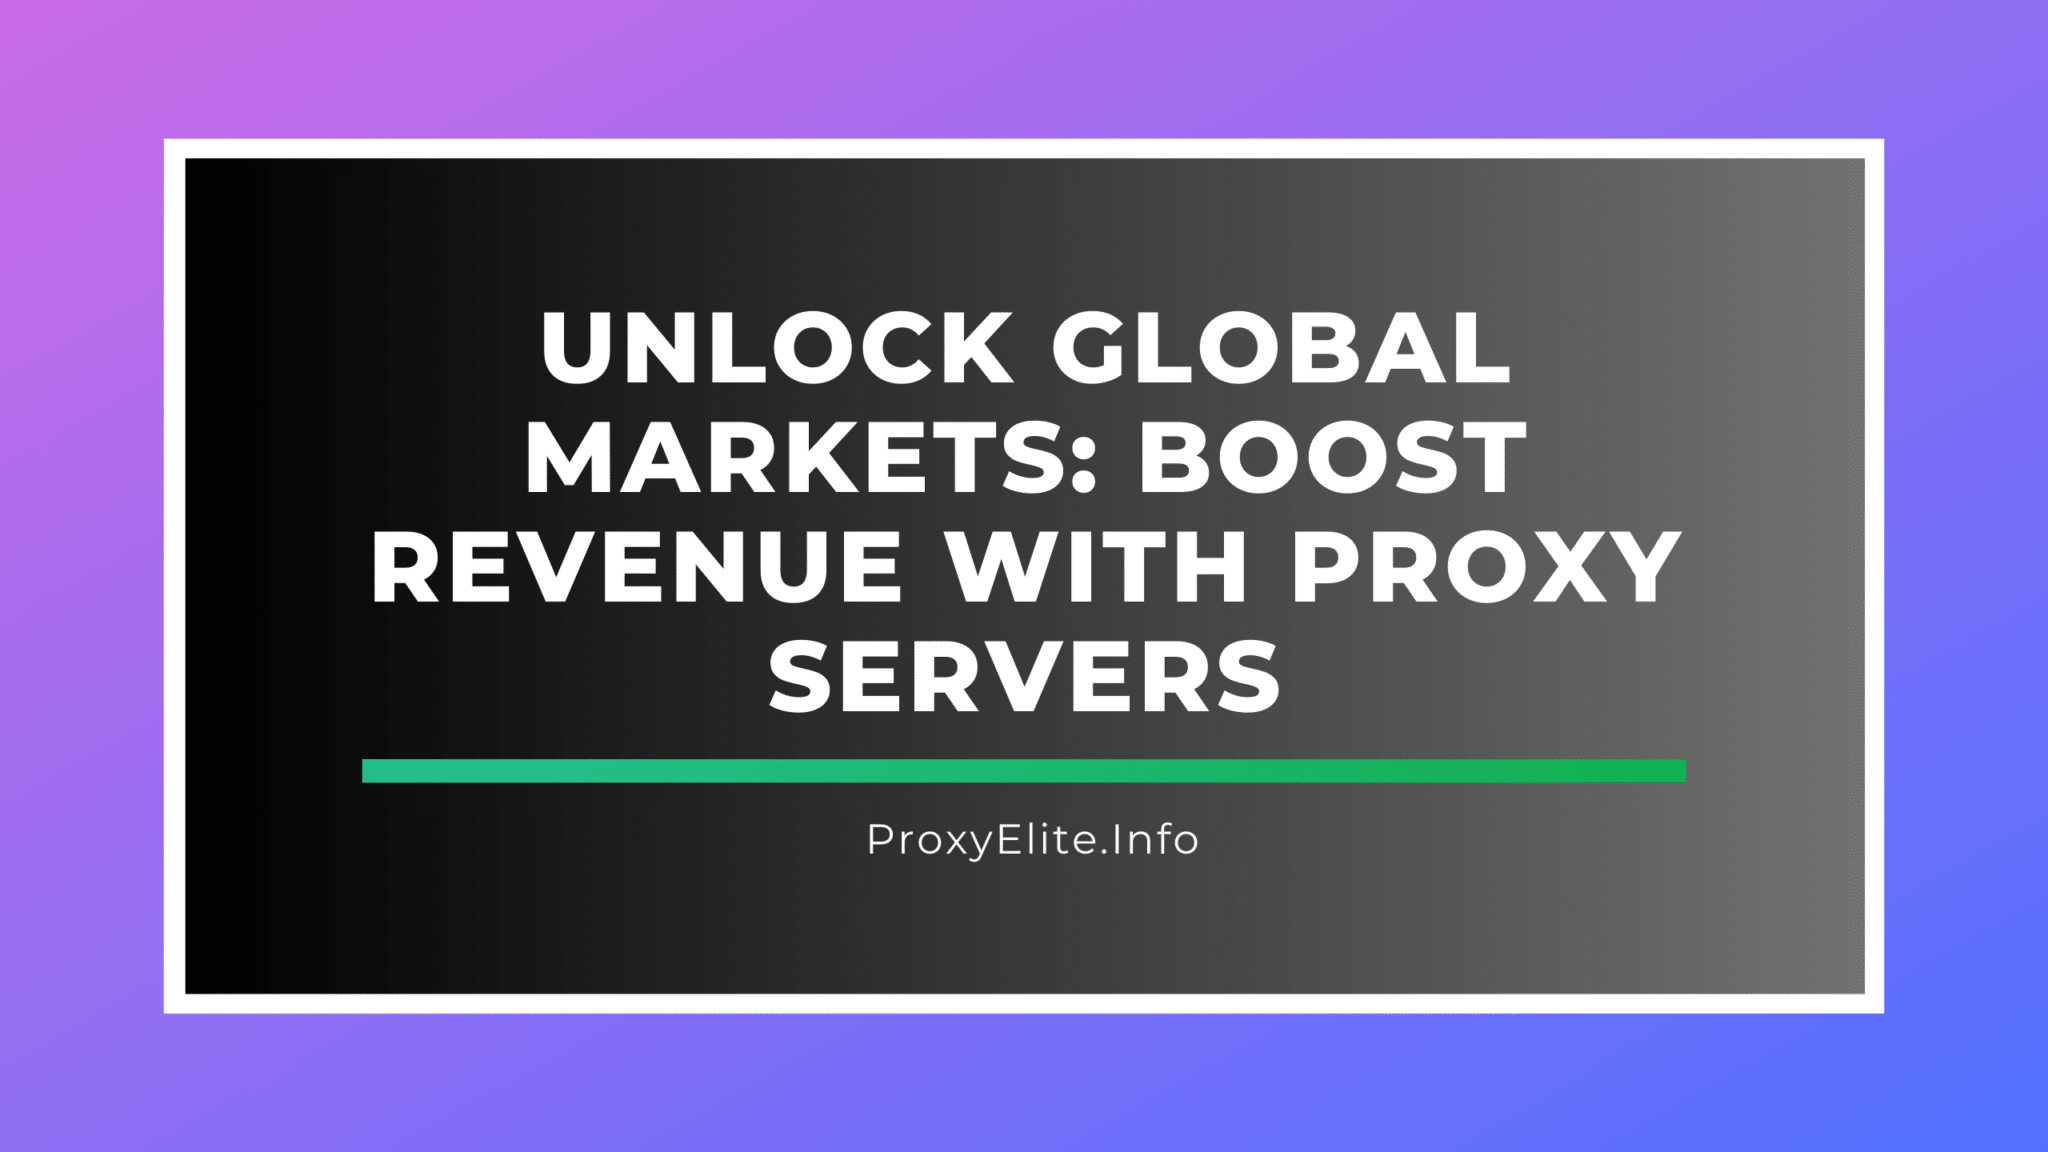 Desbloquee los mercados globales: aumente los ingresos con servidores proxy